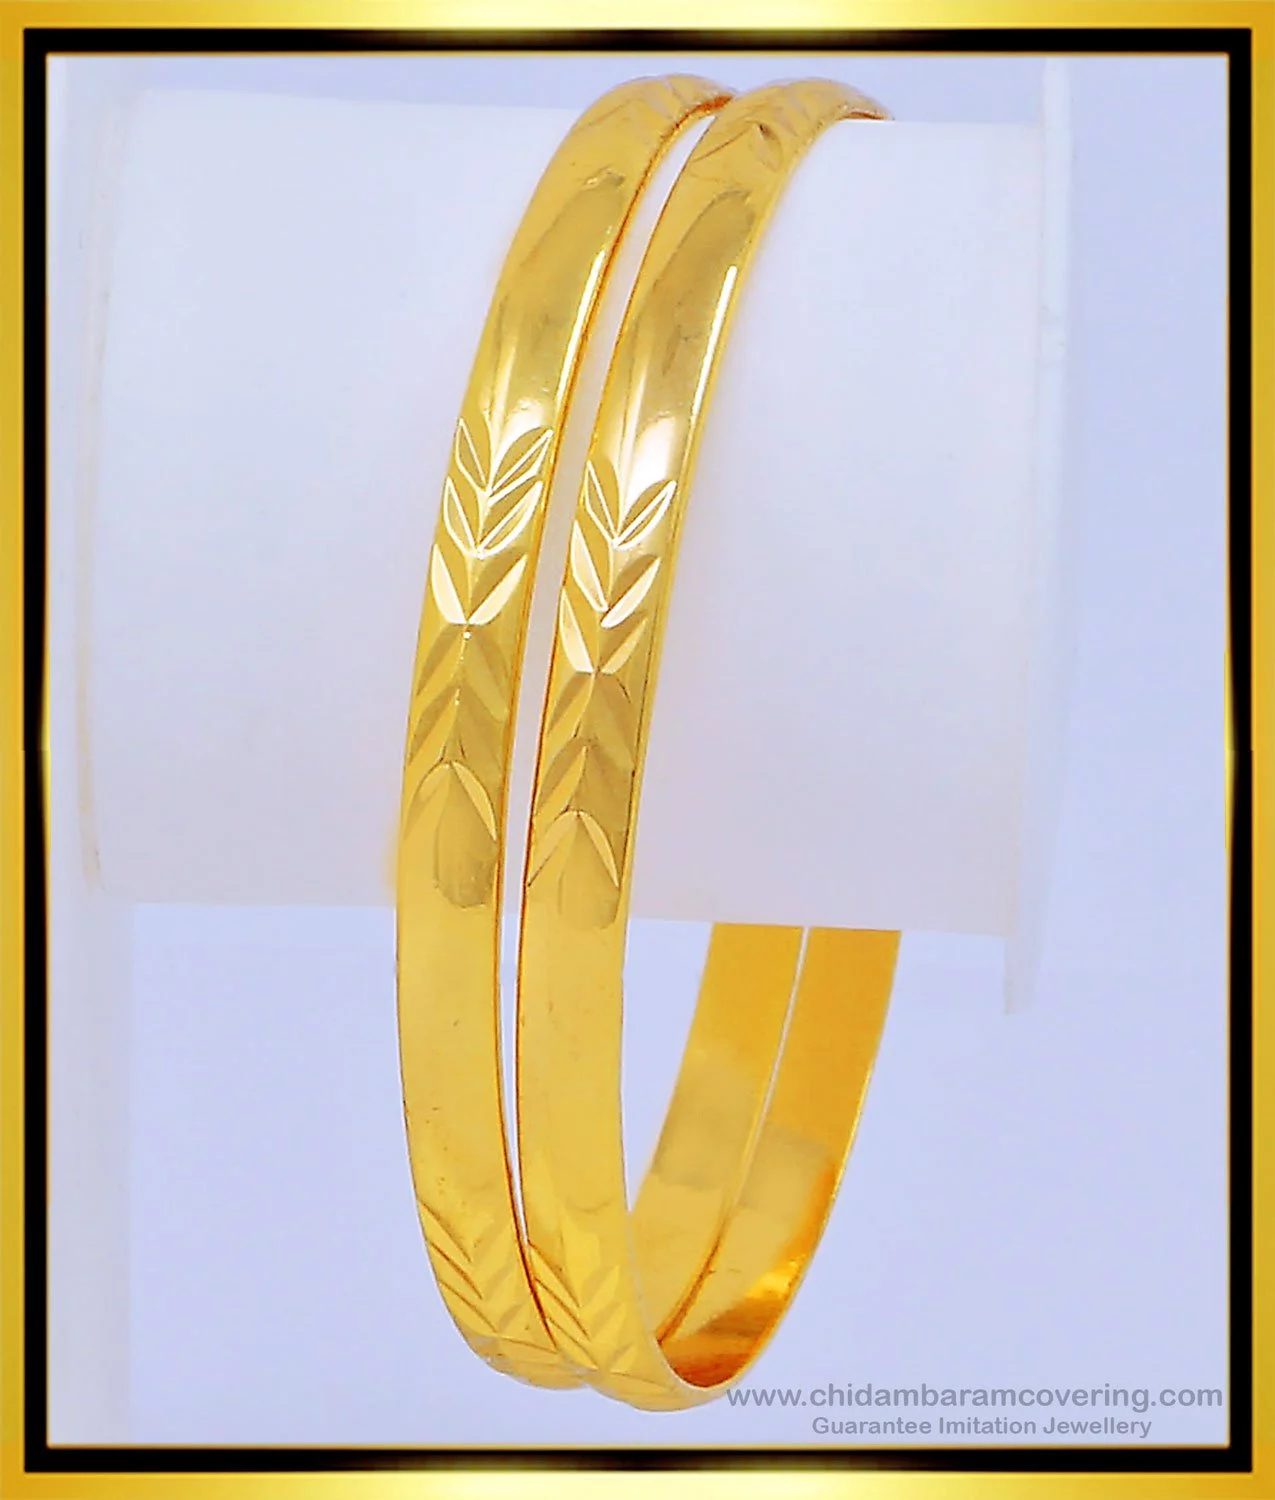 Hong Kong Duty Free 24k Gold Bracelet Women's Model 9999 Pure Gold Pure  Gold Bracelet Details Section High Free Ring Earrings